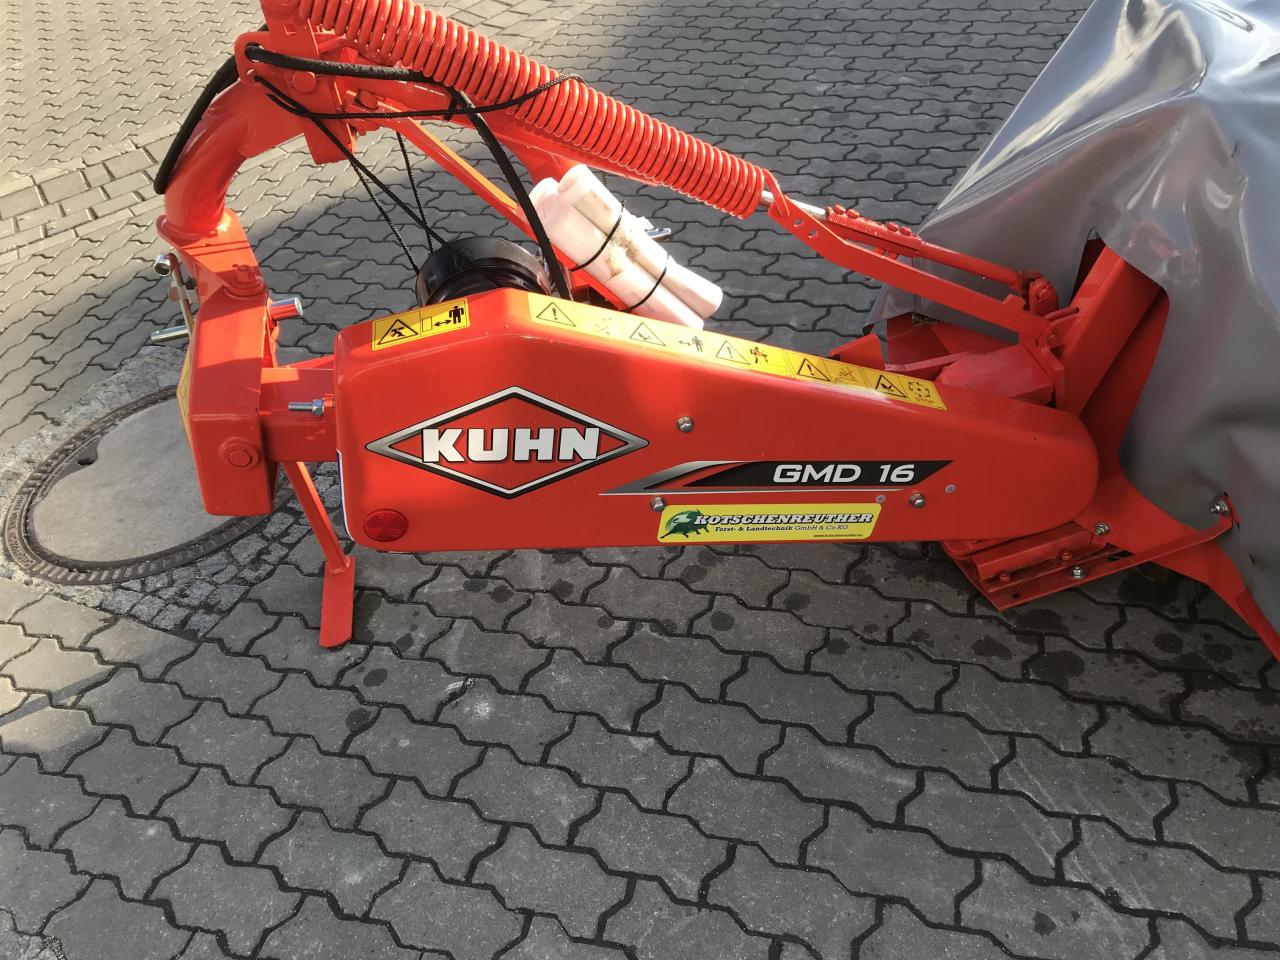 Kuhn GMD 16 Rear